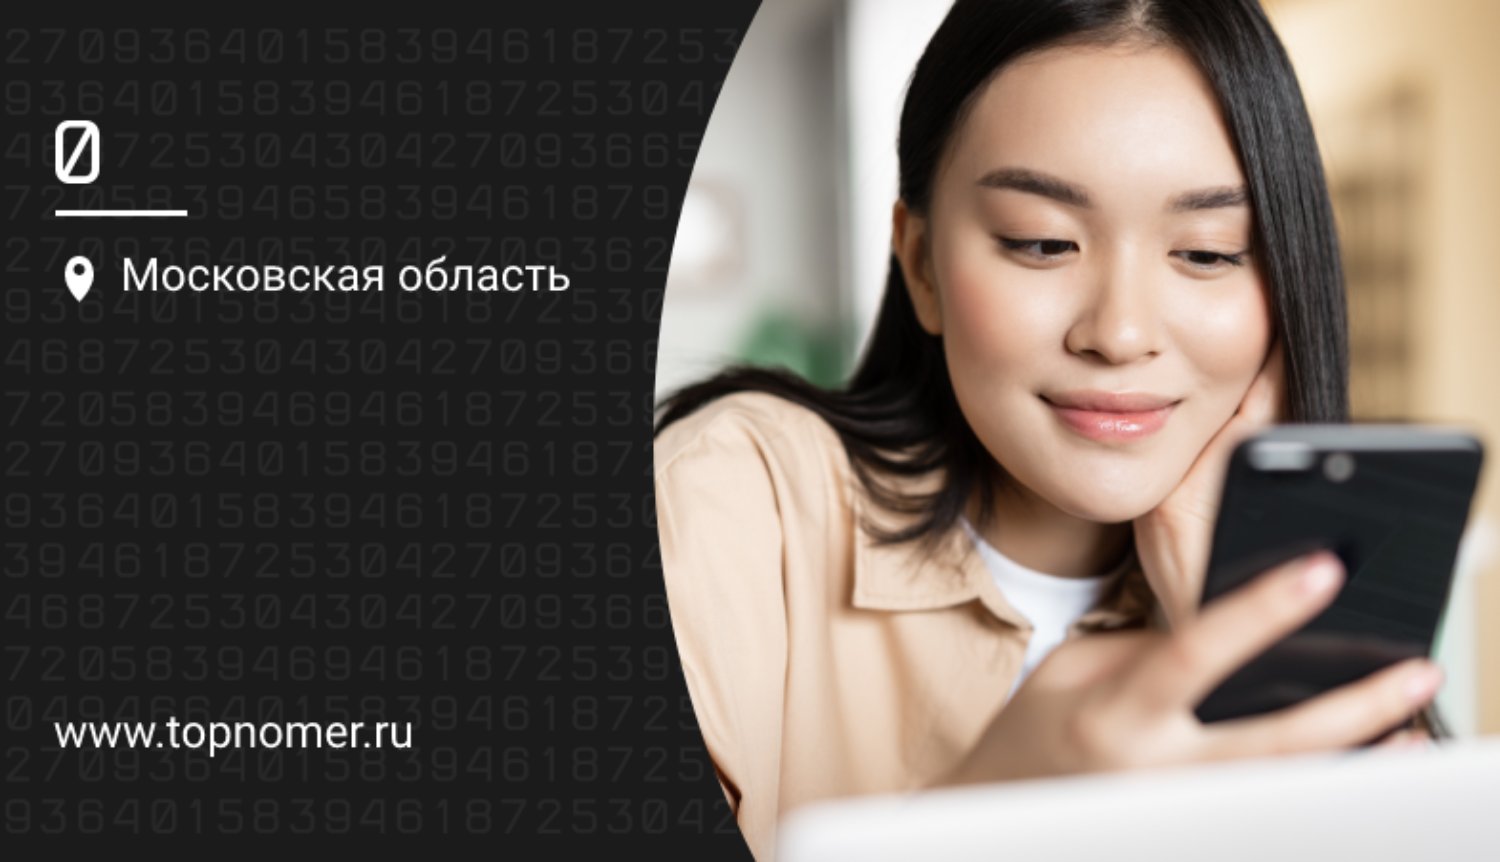 Яндекс Клавиатура: главные фишки и настройка